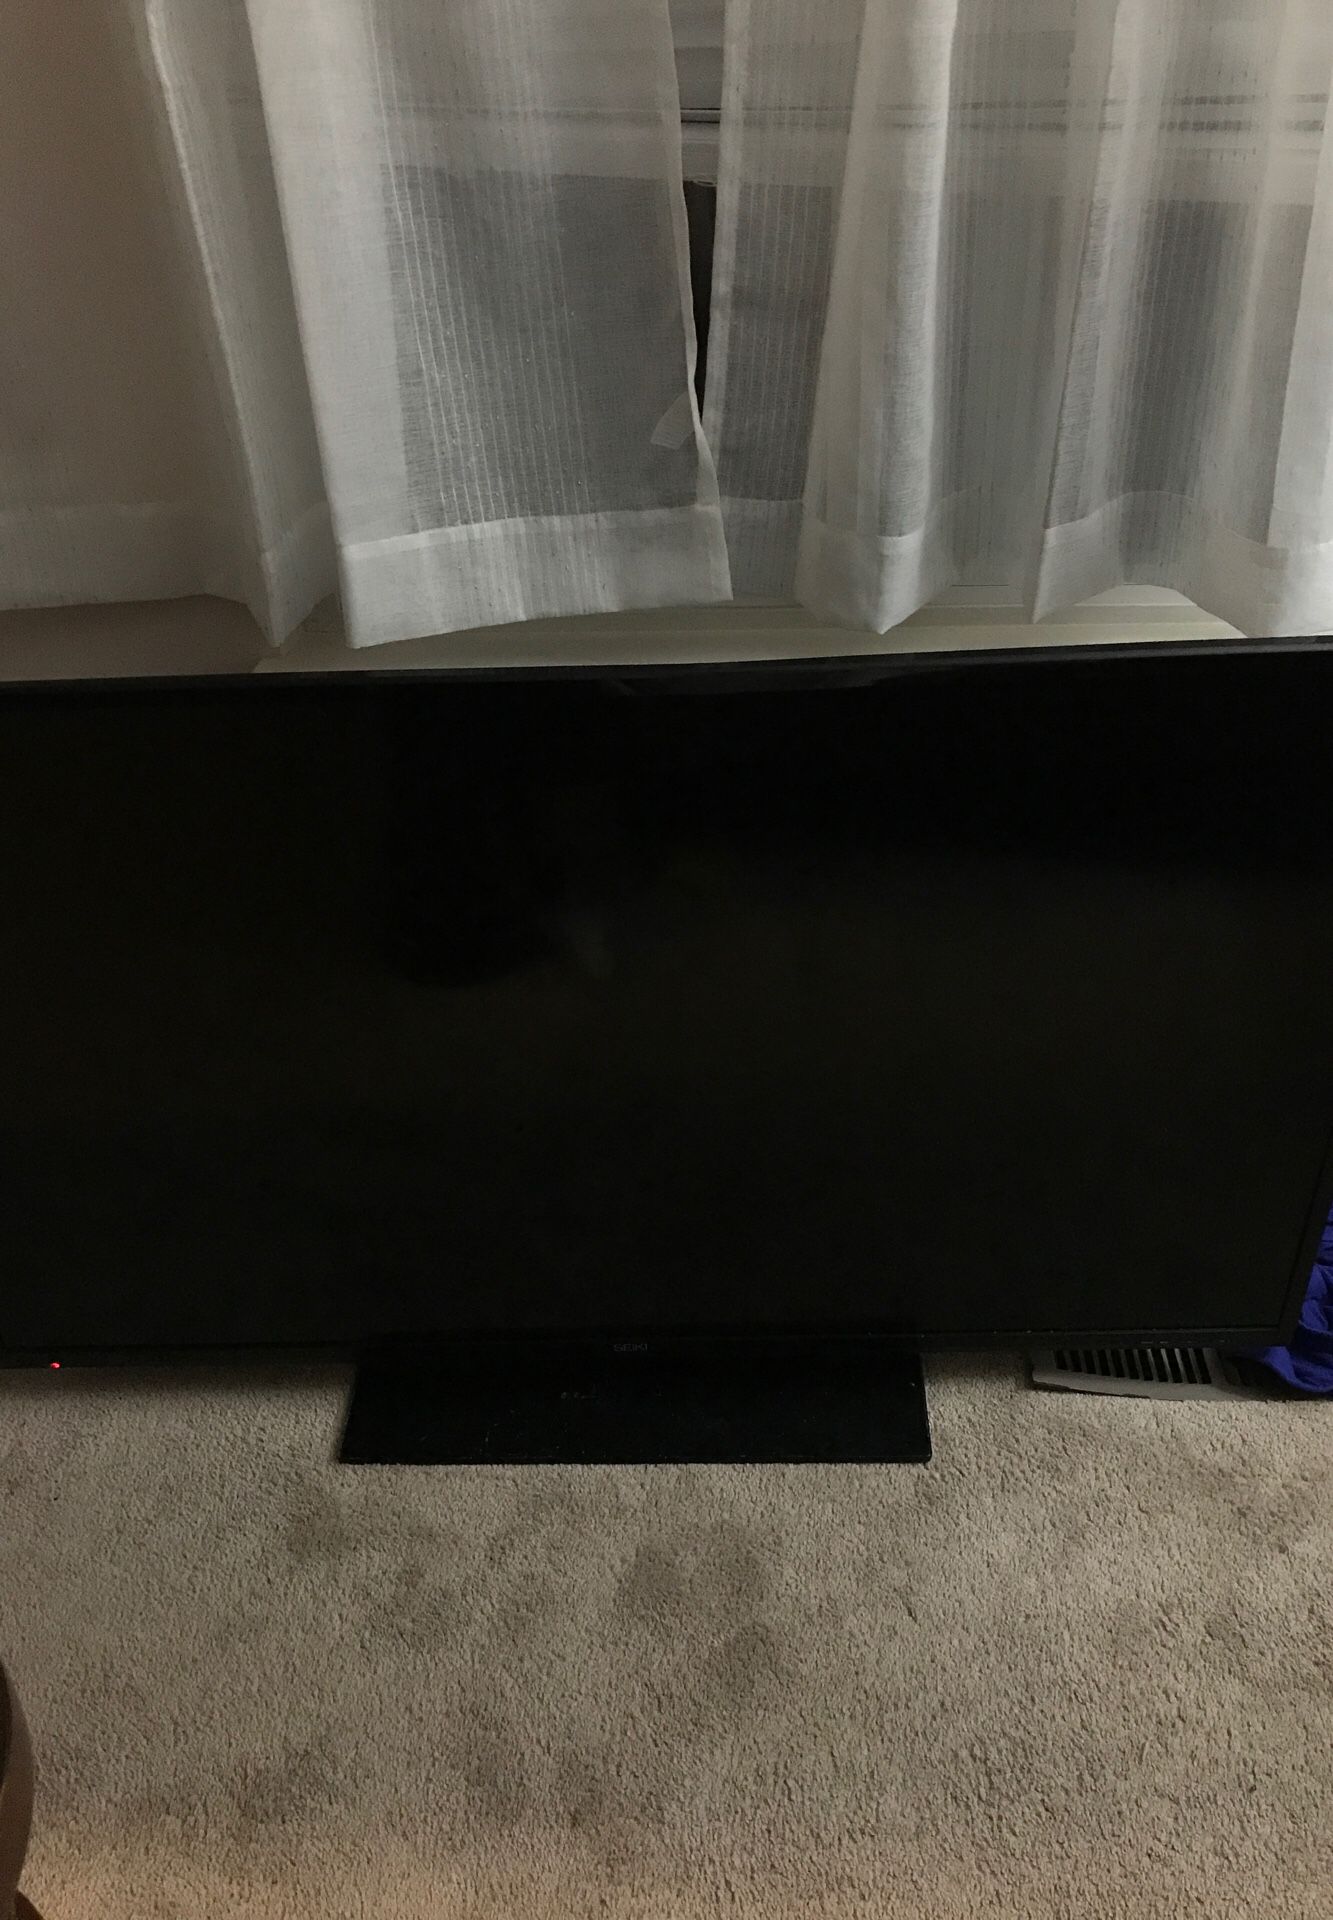 SEIKI 50 inch TV